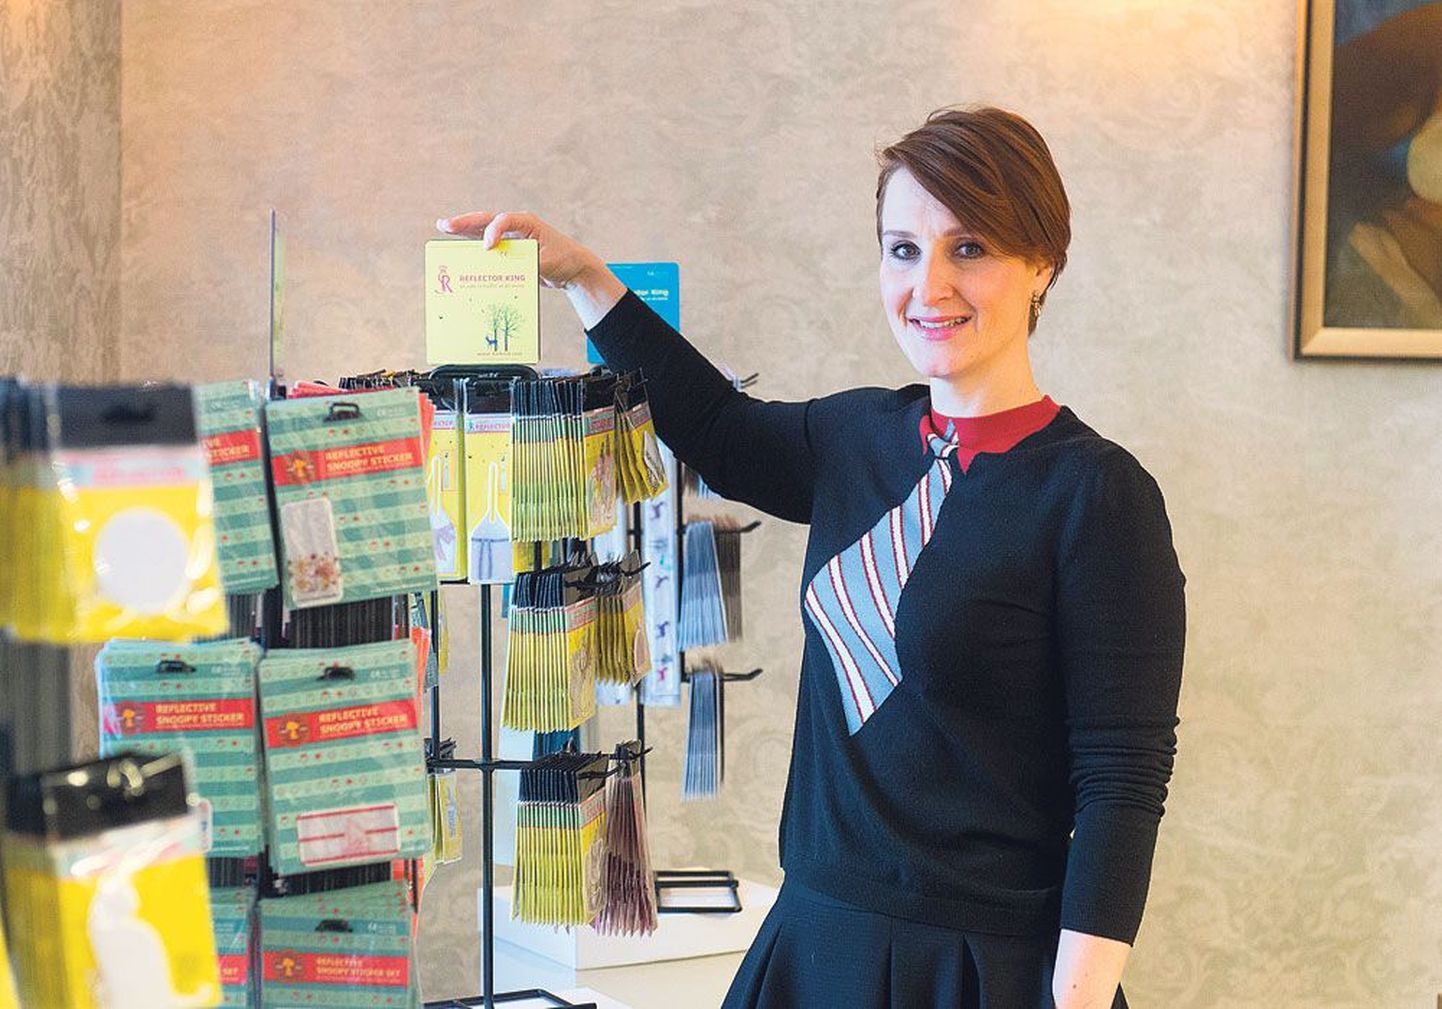 Директор по продажам фирмы Softreflector Хелина Саарнийт демонстрирует продукцию фирмы.